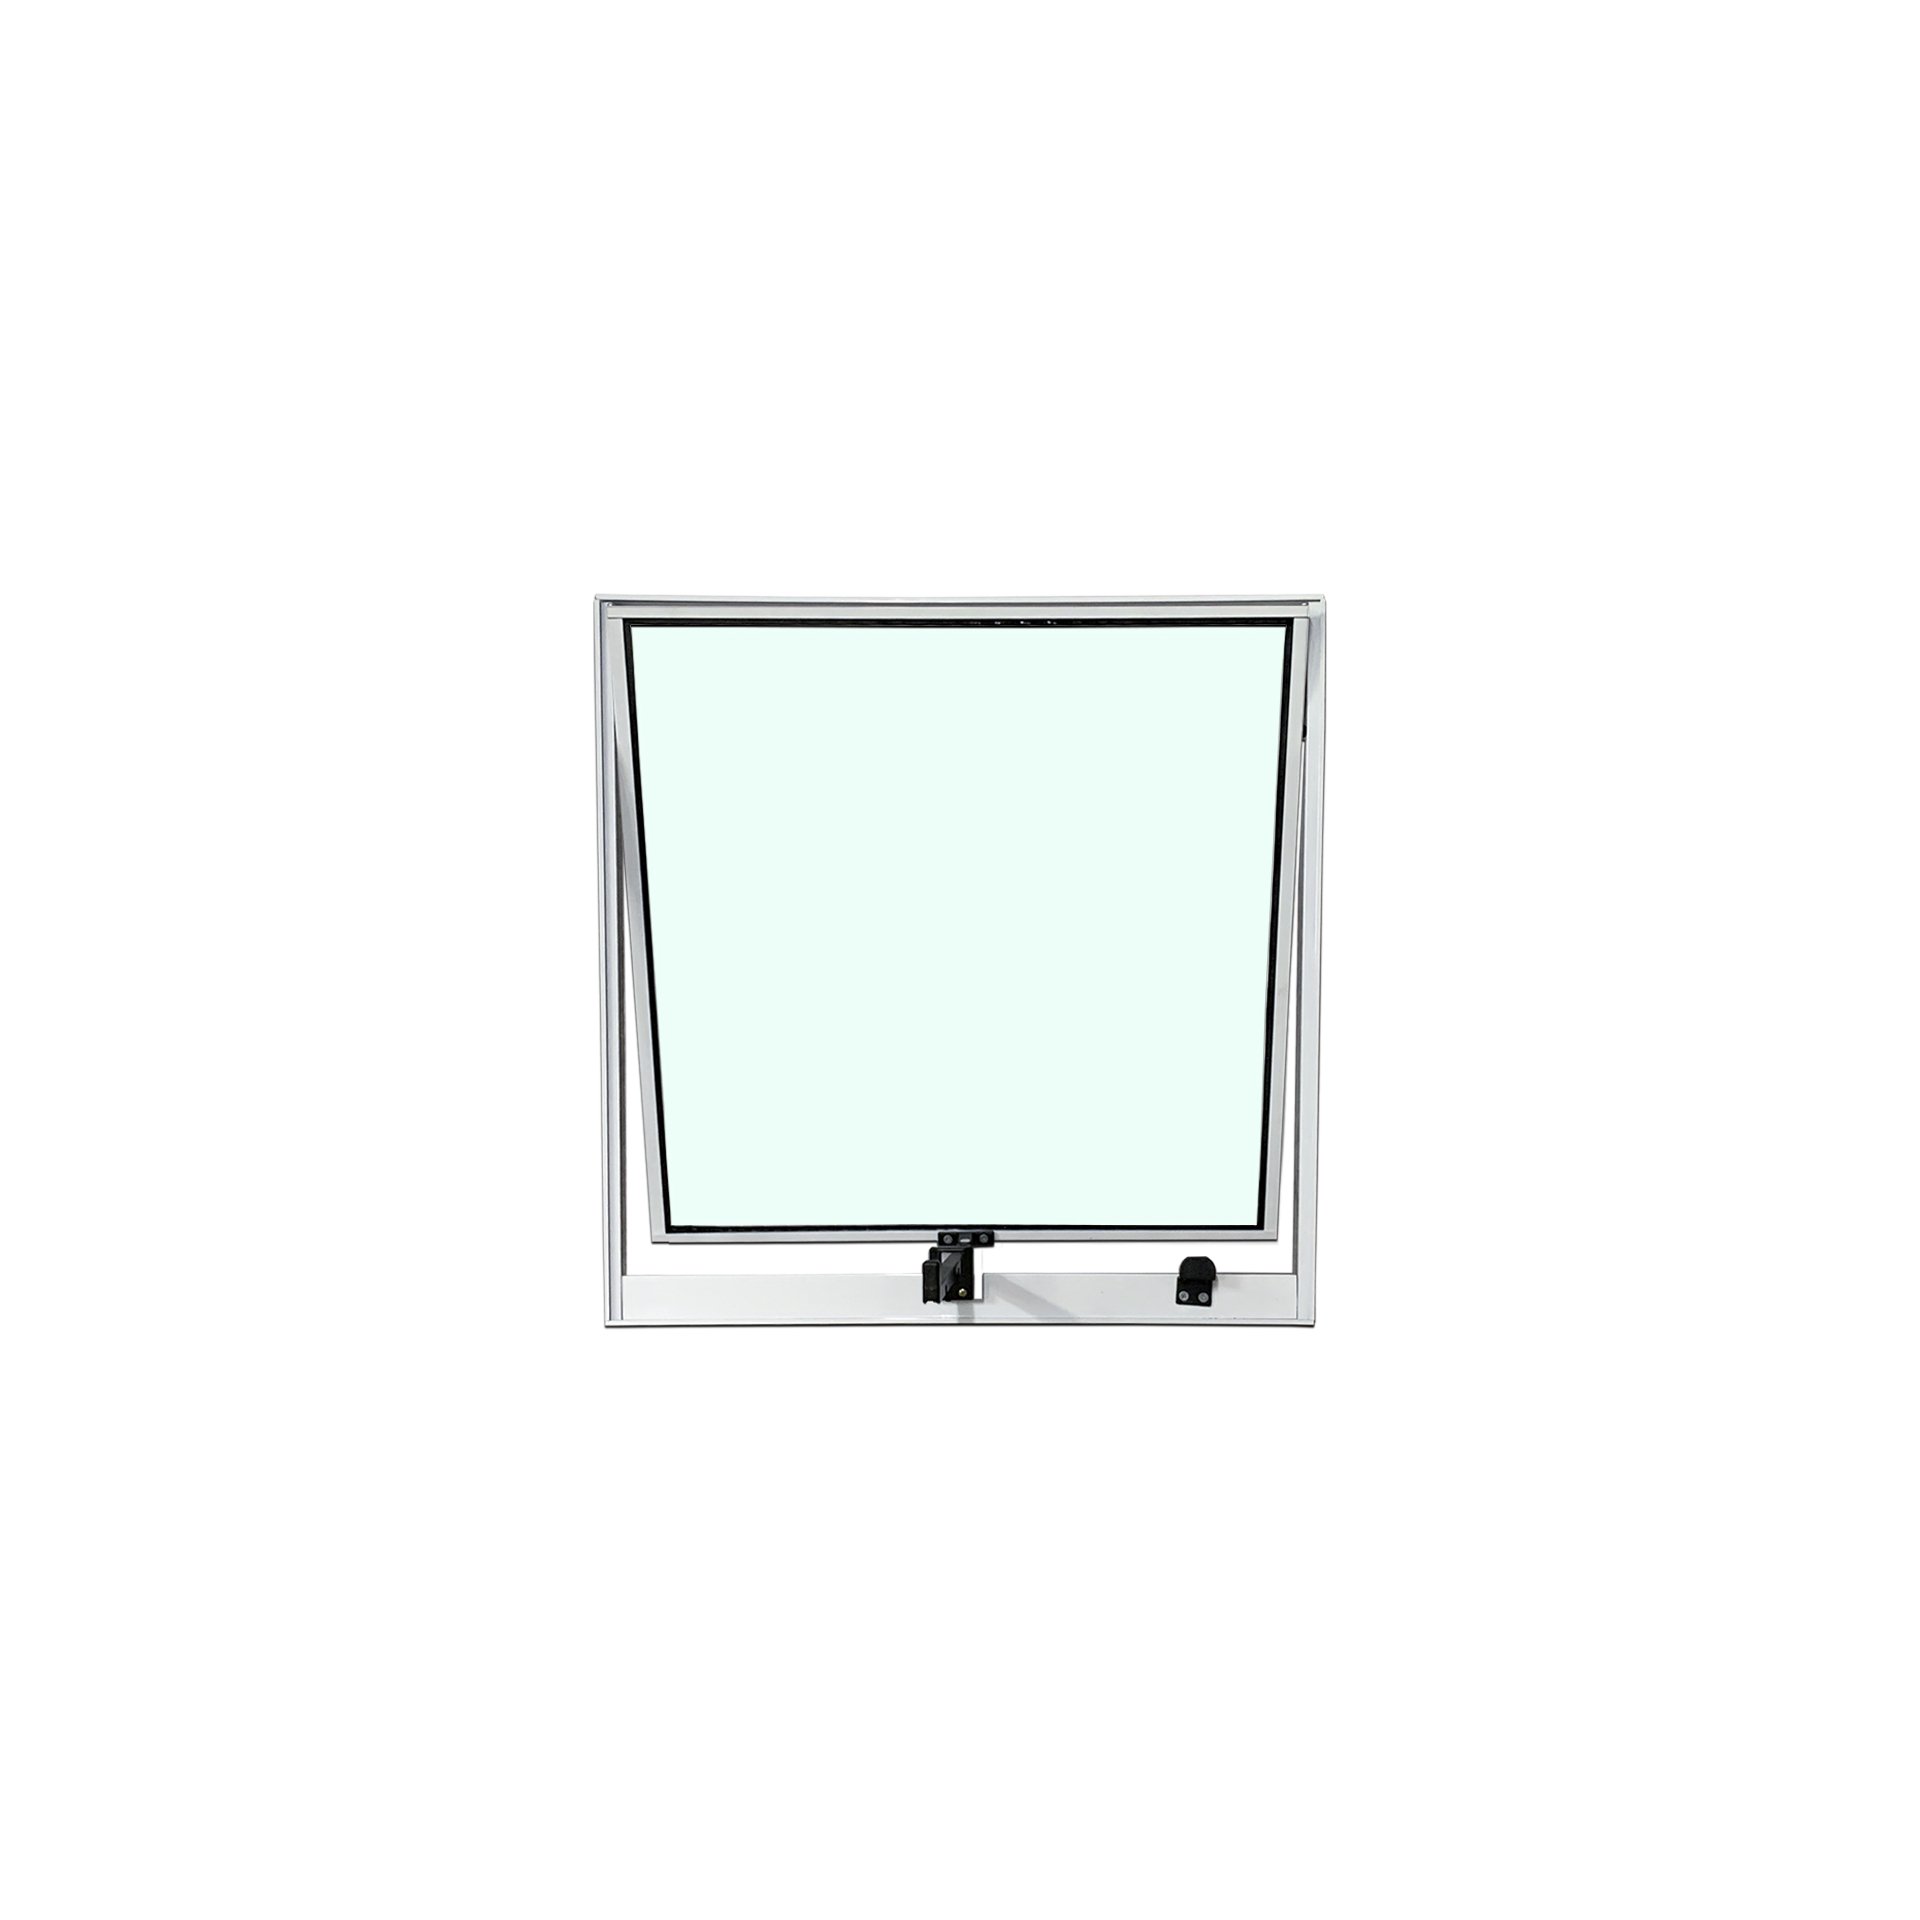 Vitro Projetante 80x60 Alumínio Branco Vidro Liso - 1